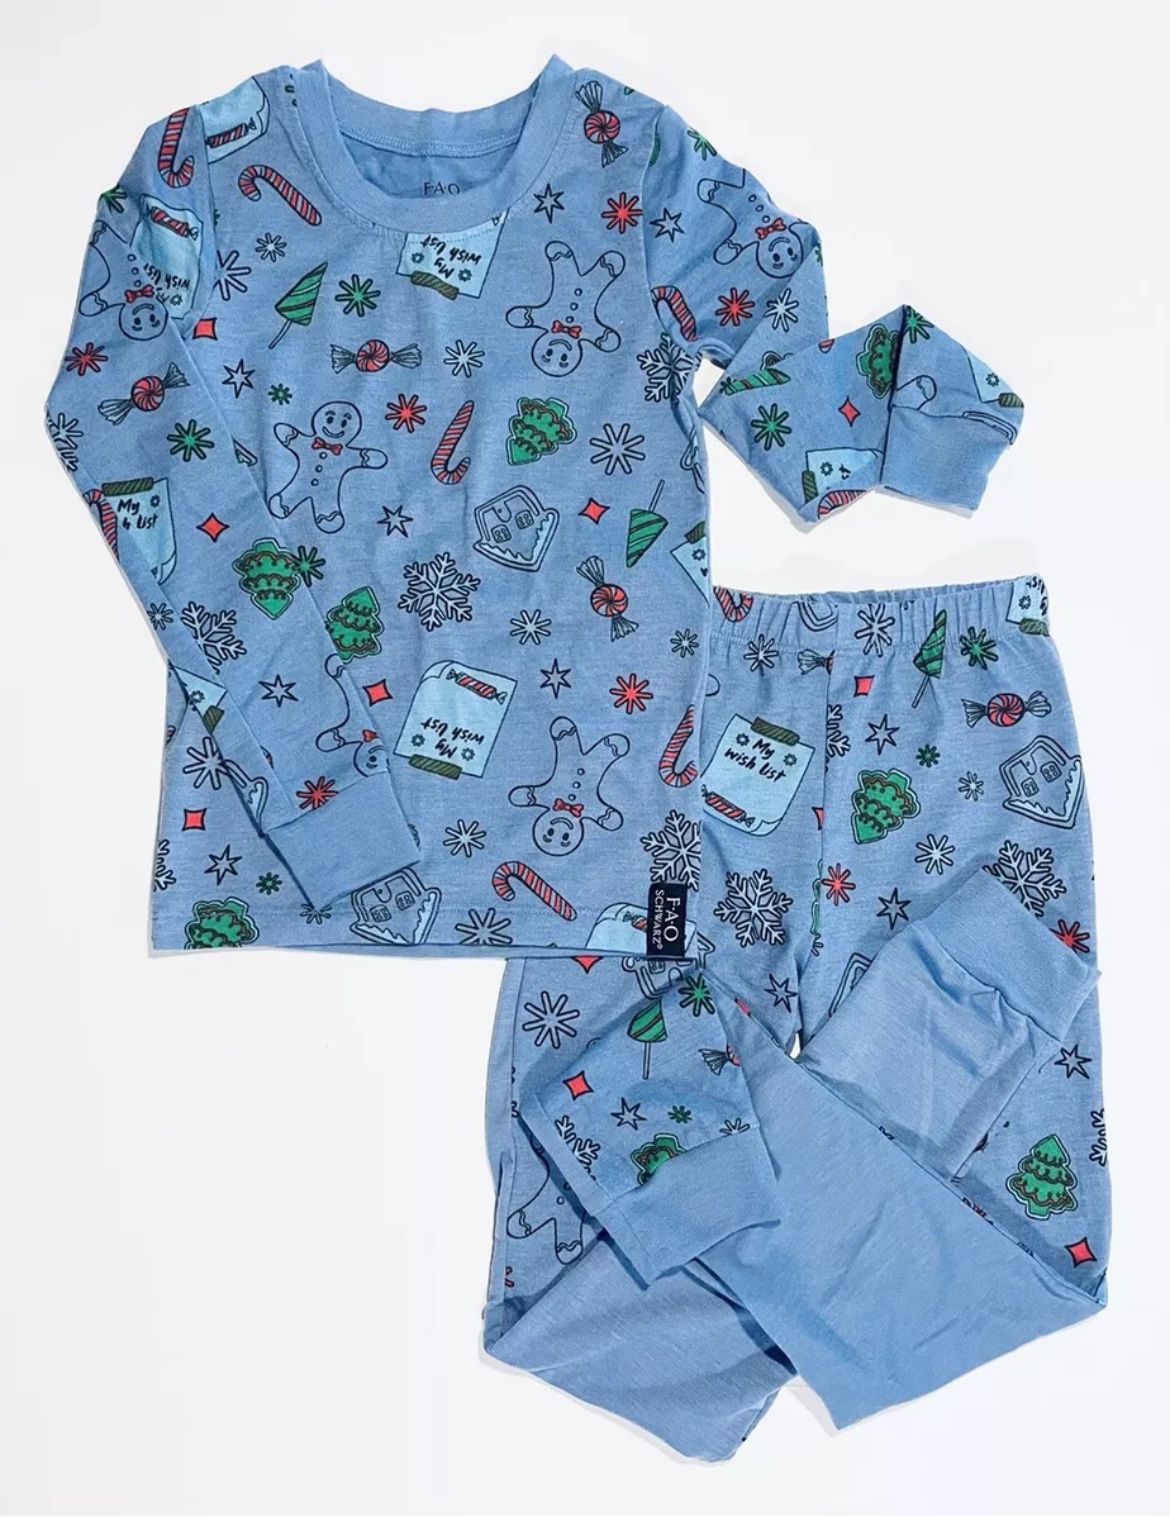 FAO Schwarz 2-pc Blue Christmas Pajama Set Boys 6, Never Worn, SMOKE FREE!